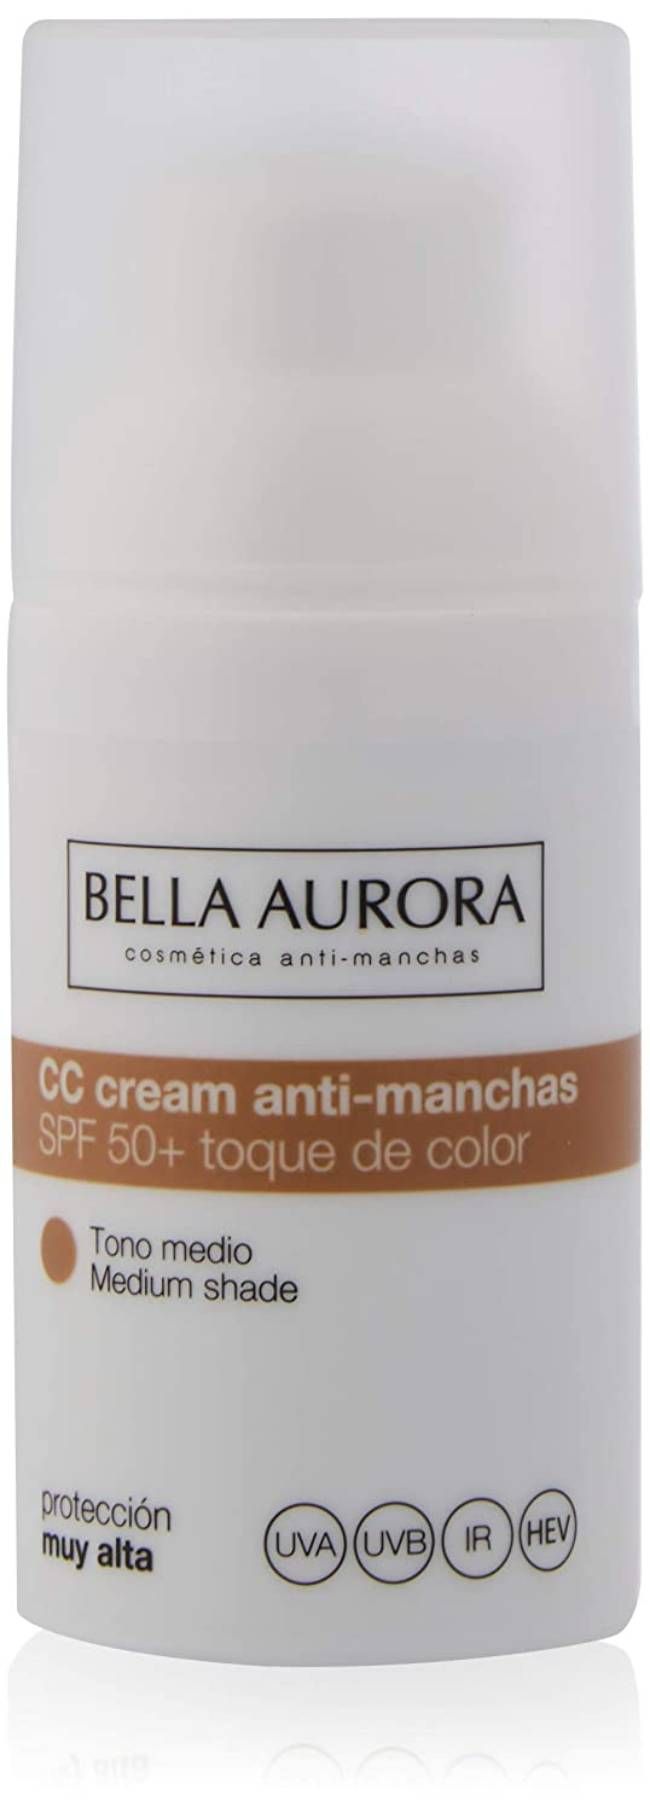 Bella Aurora Crema Facial con Color y Protección Solar 50+ Anti-Manchas